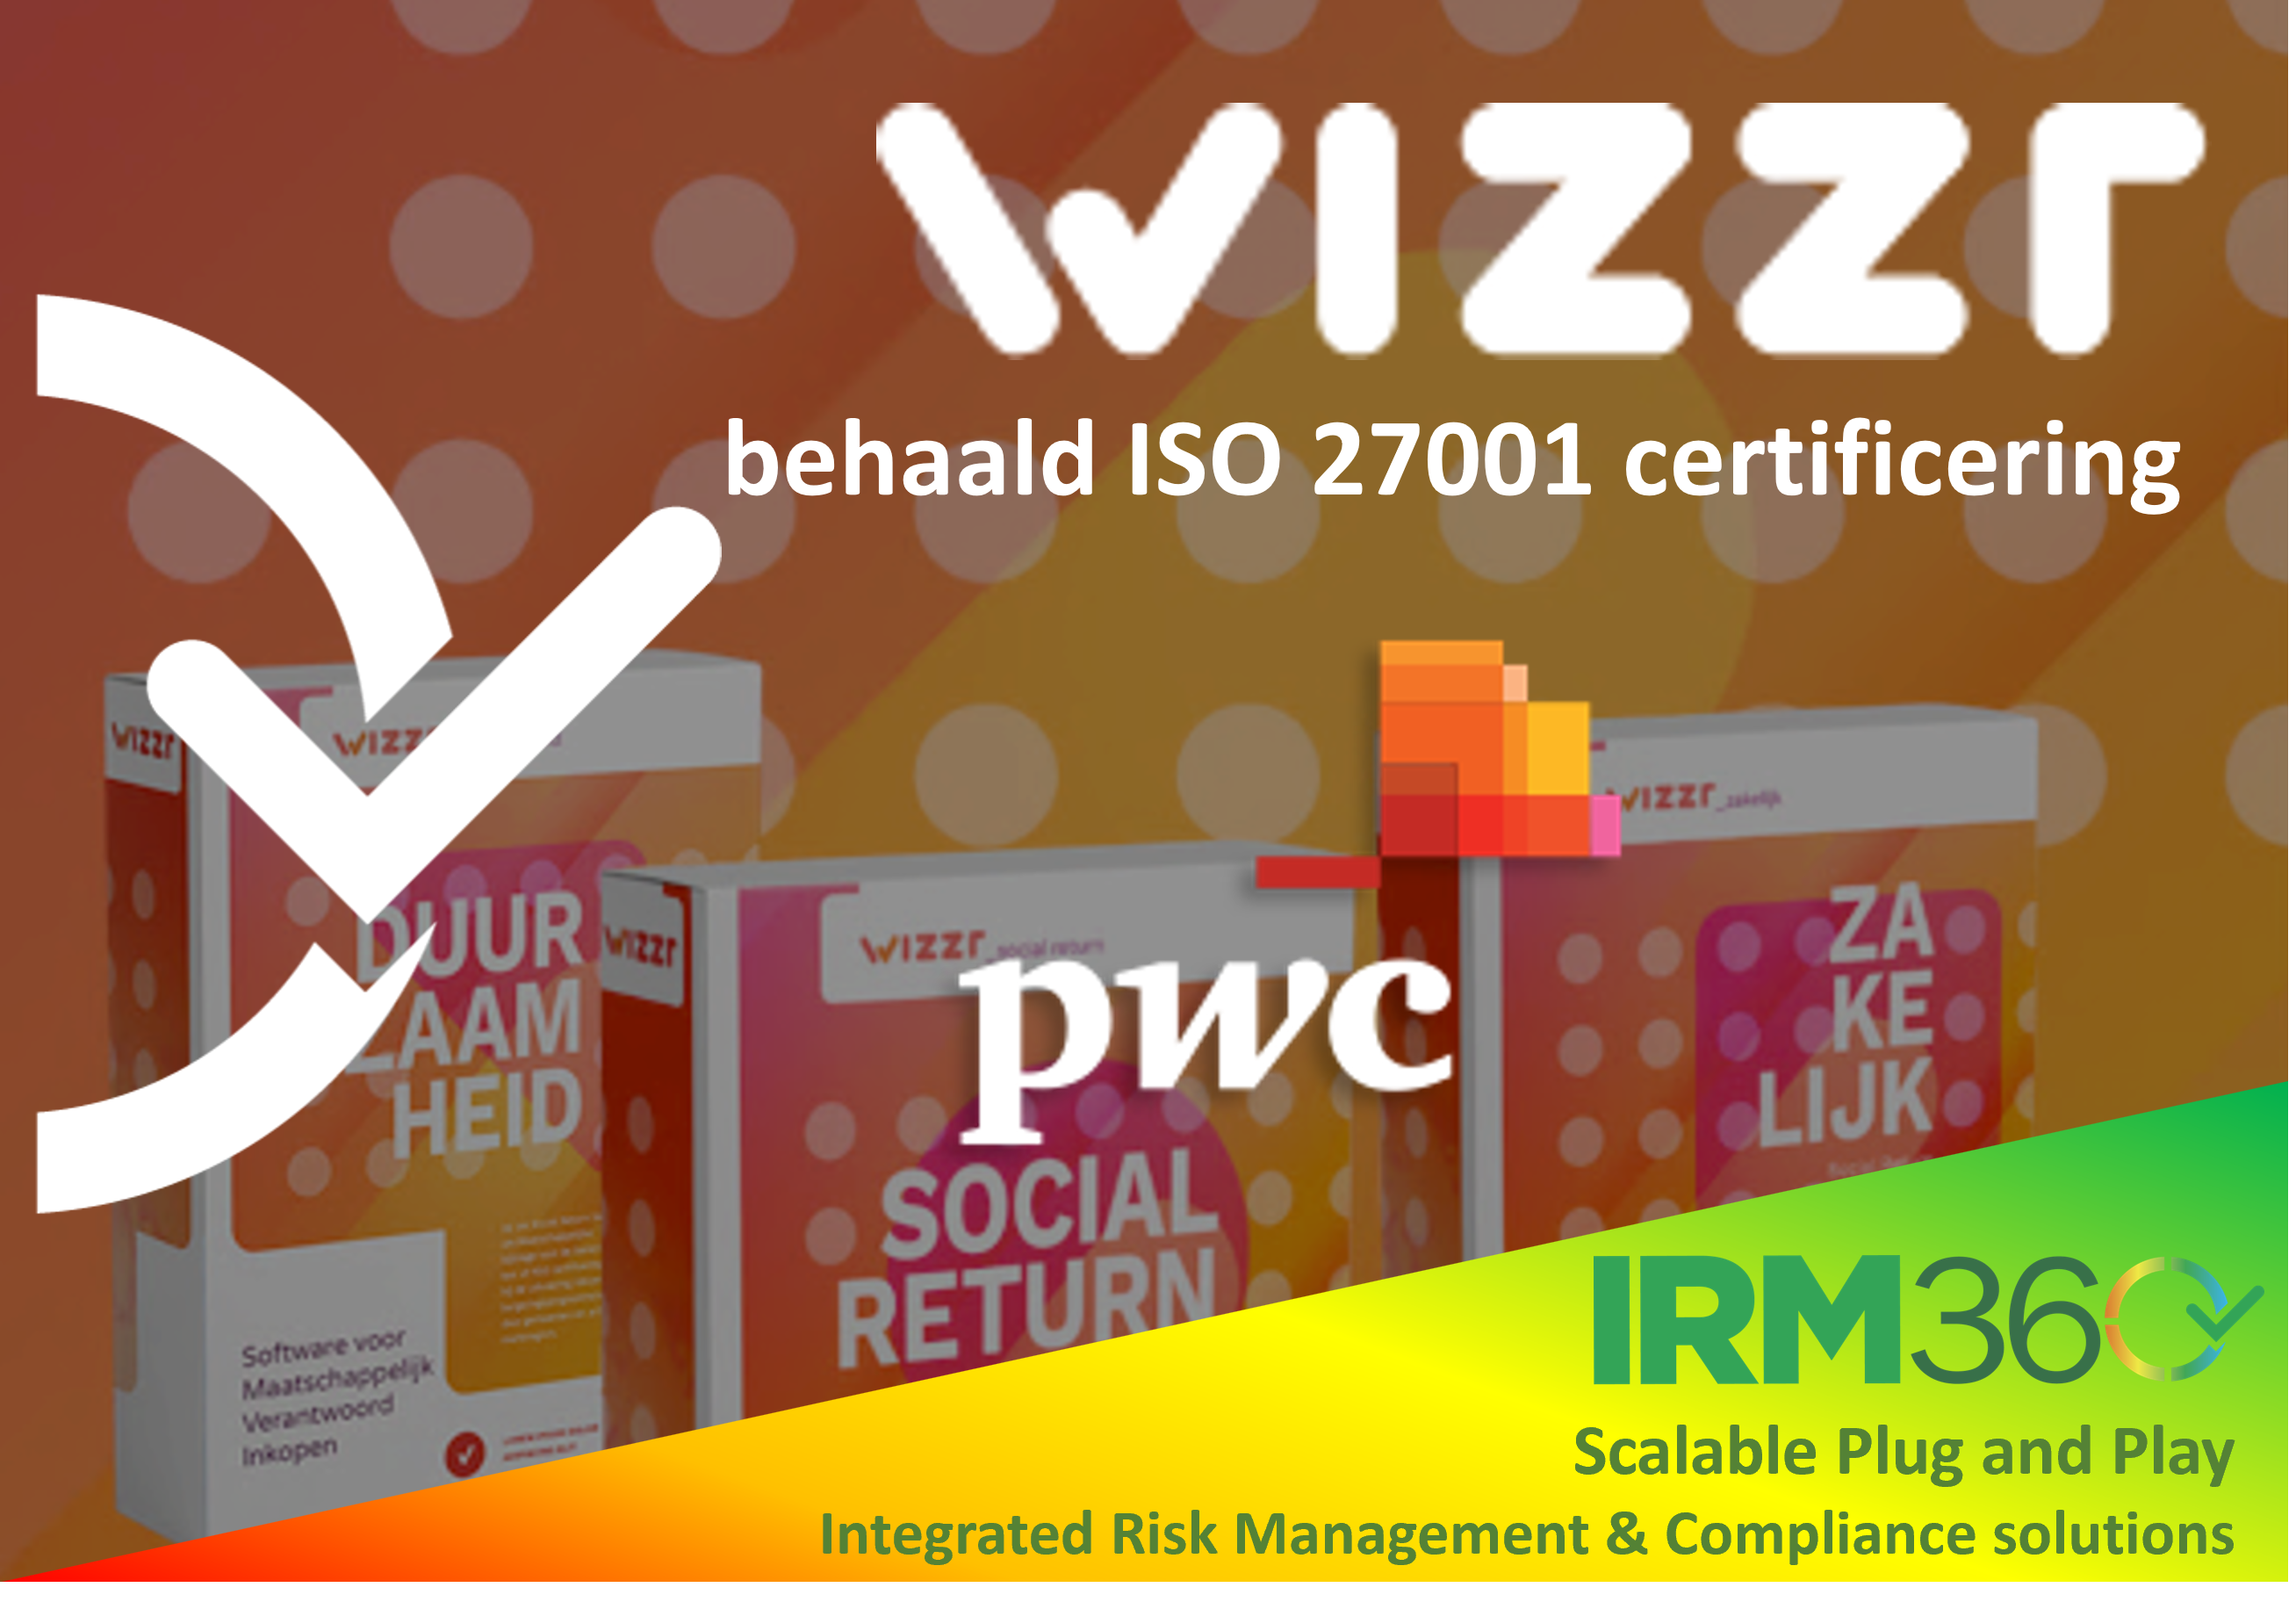 Wizzr behaalt ISO 27001 certificering!